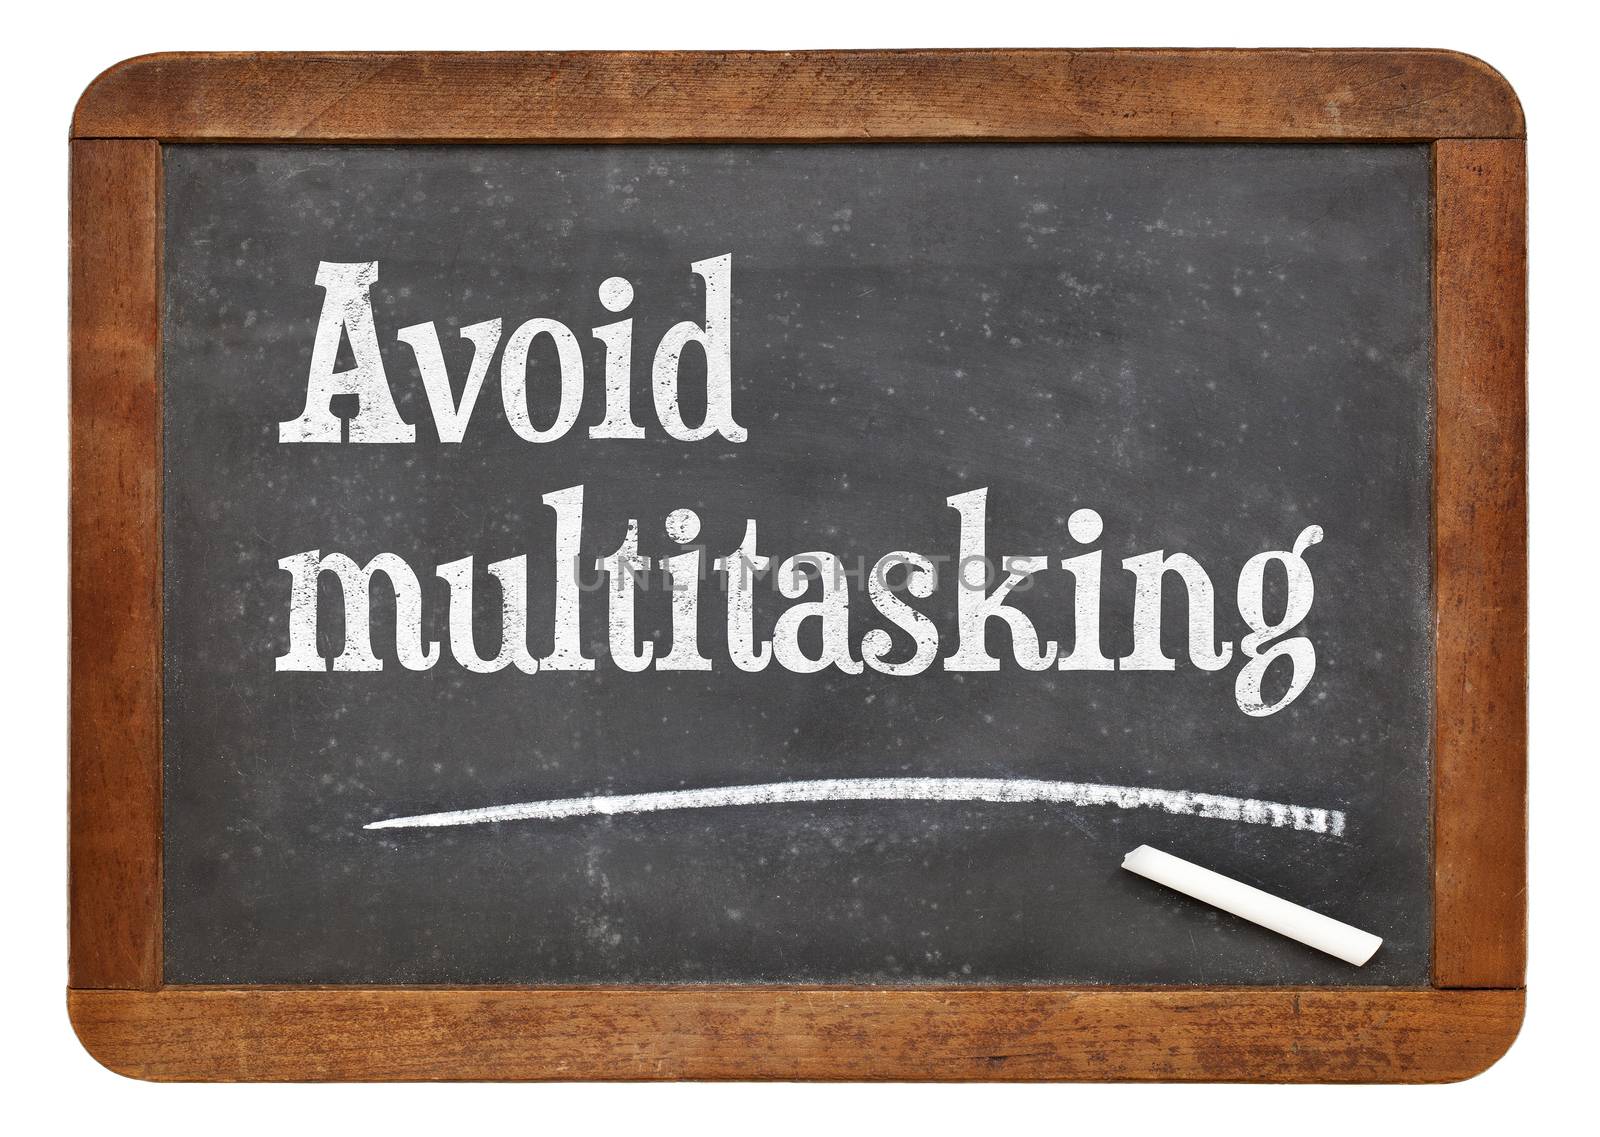 Avoid multitasking advice by PixelsAway